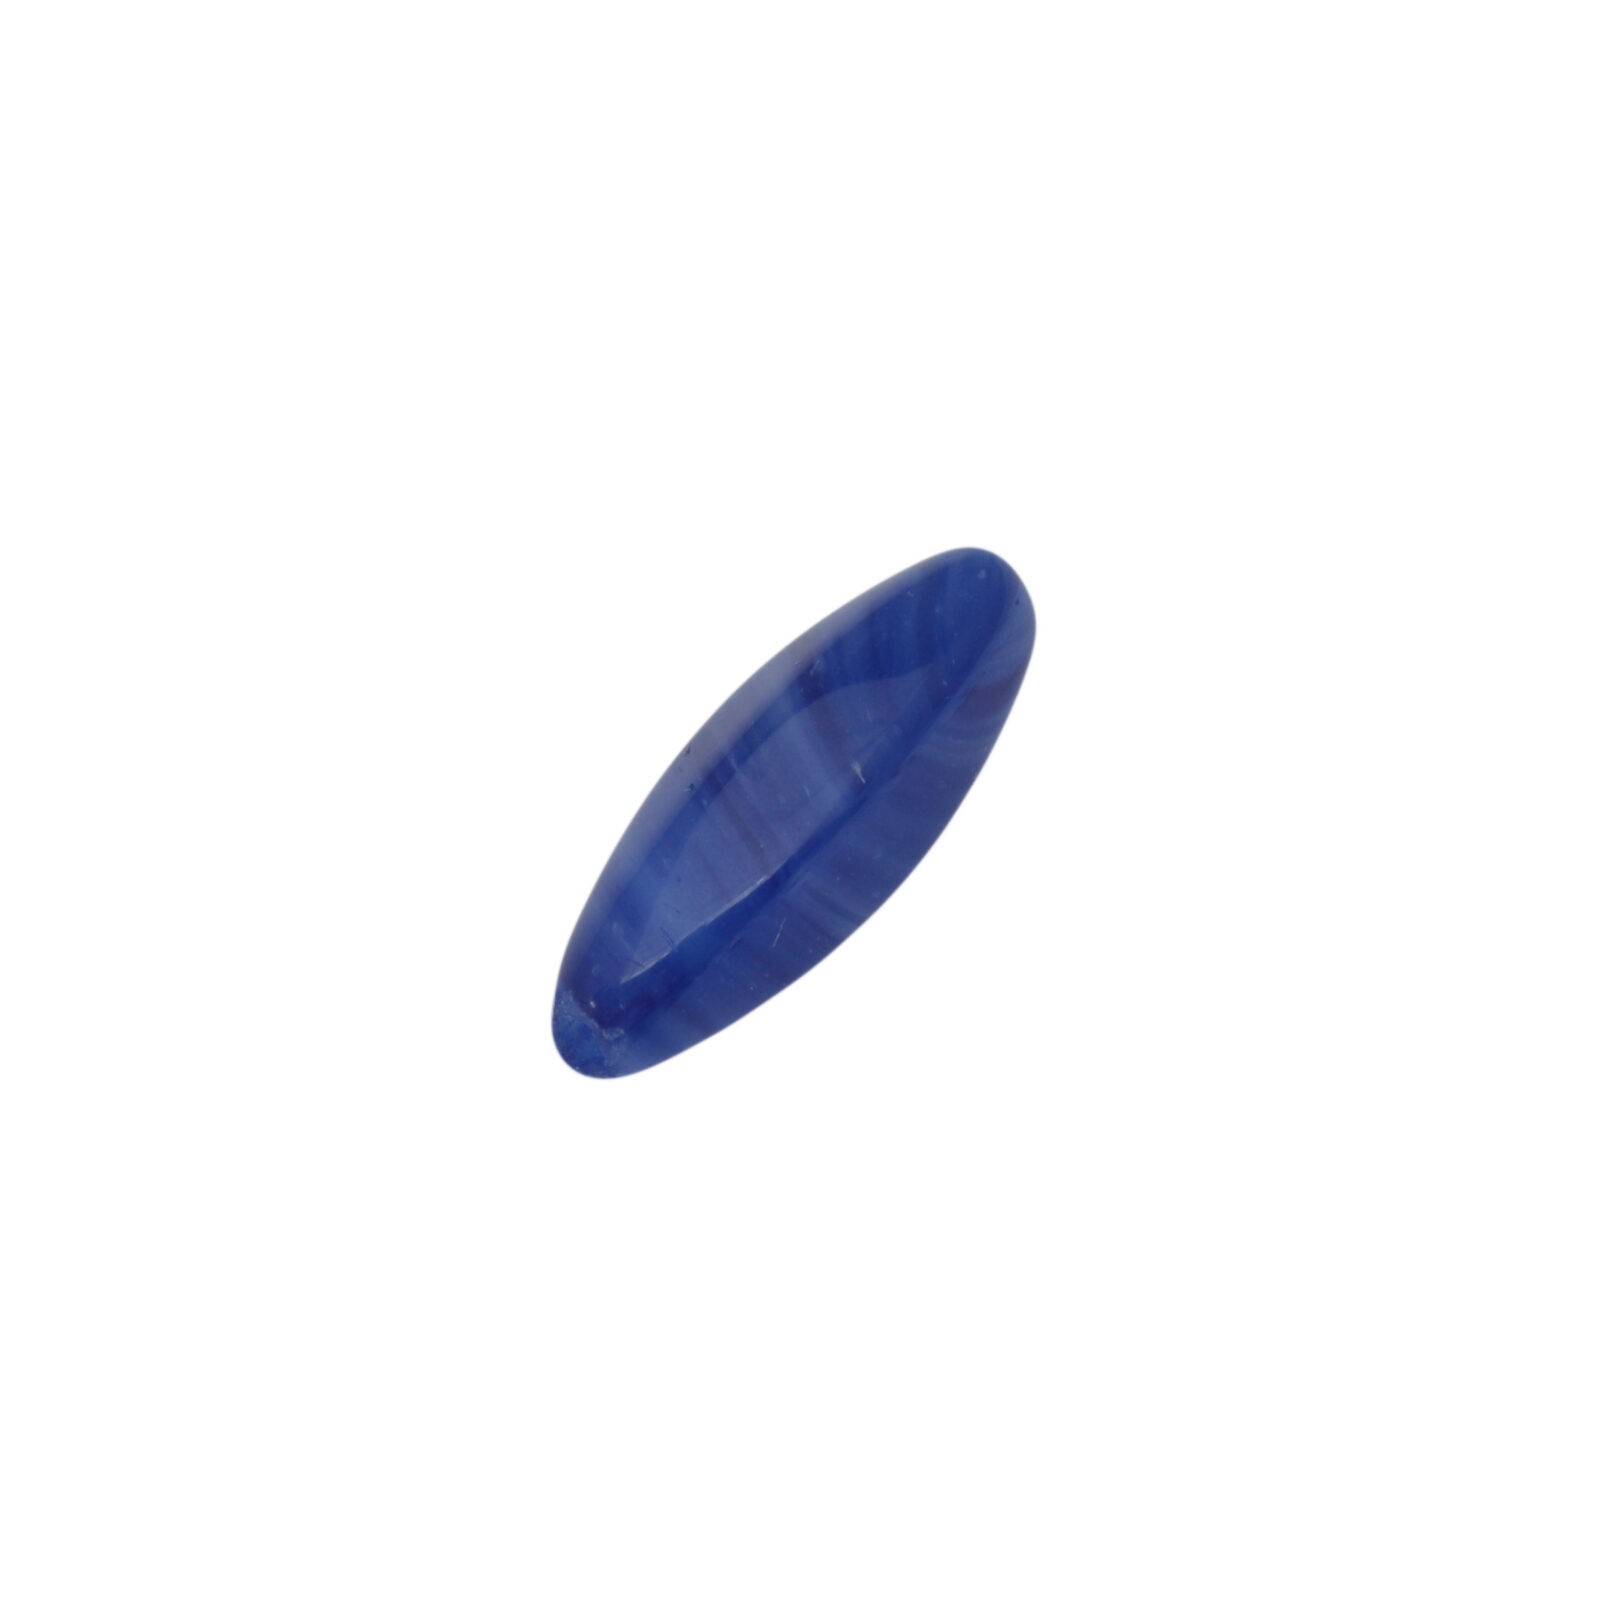 Donkerblauwe ovale glaskraal met witte/blauwe strepen